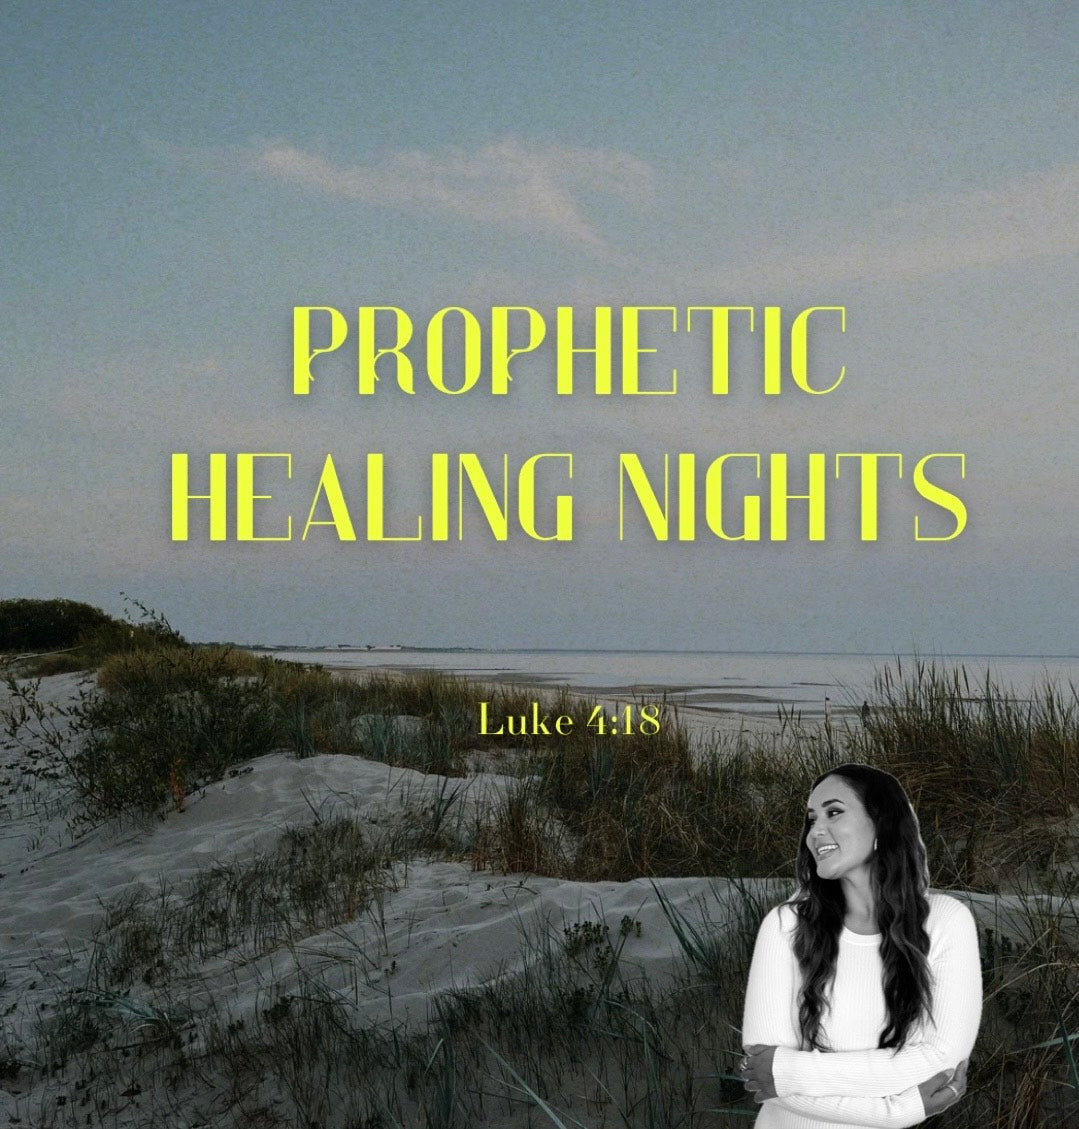 PROPHETIC HEALING NIGHTS